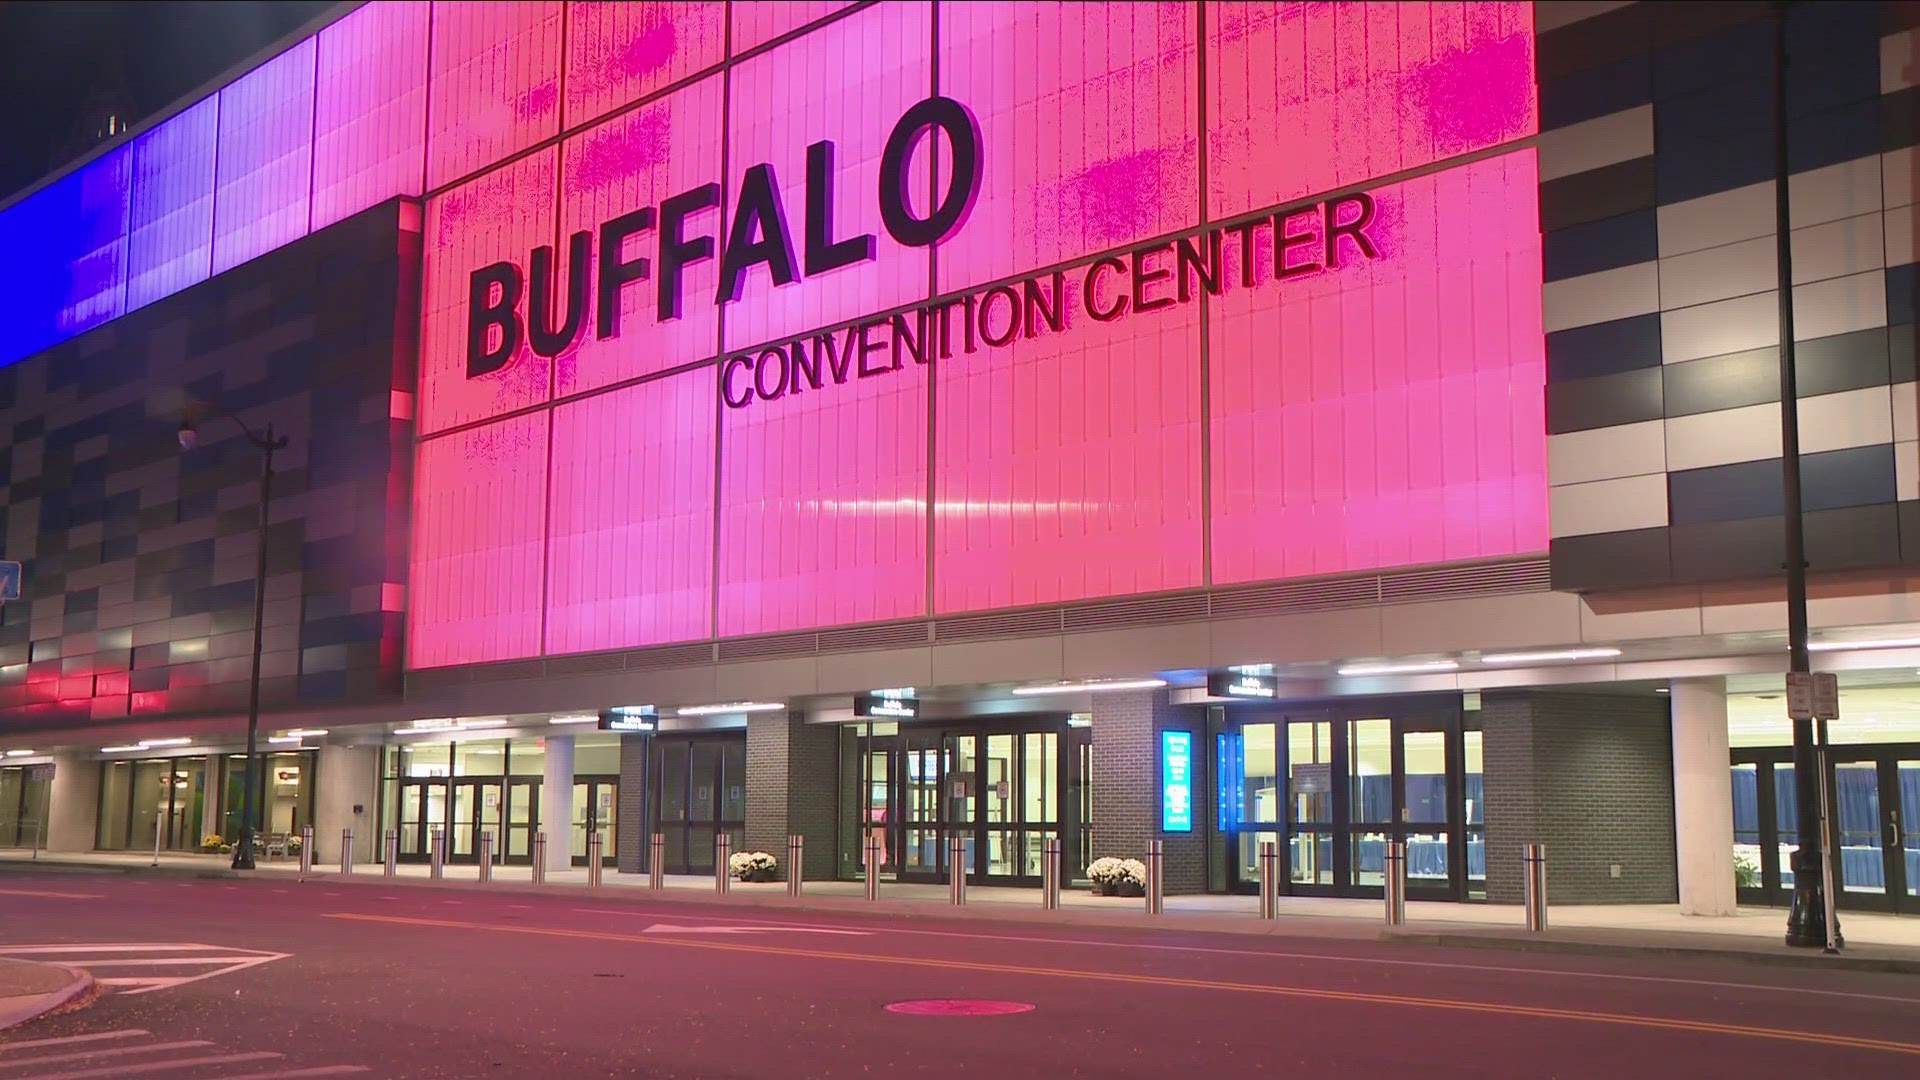 Buffalo Niagara Convention center debuts new facade and indoor upgrades